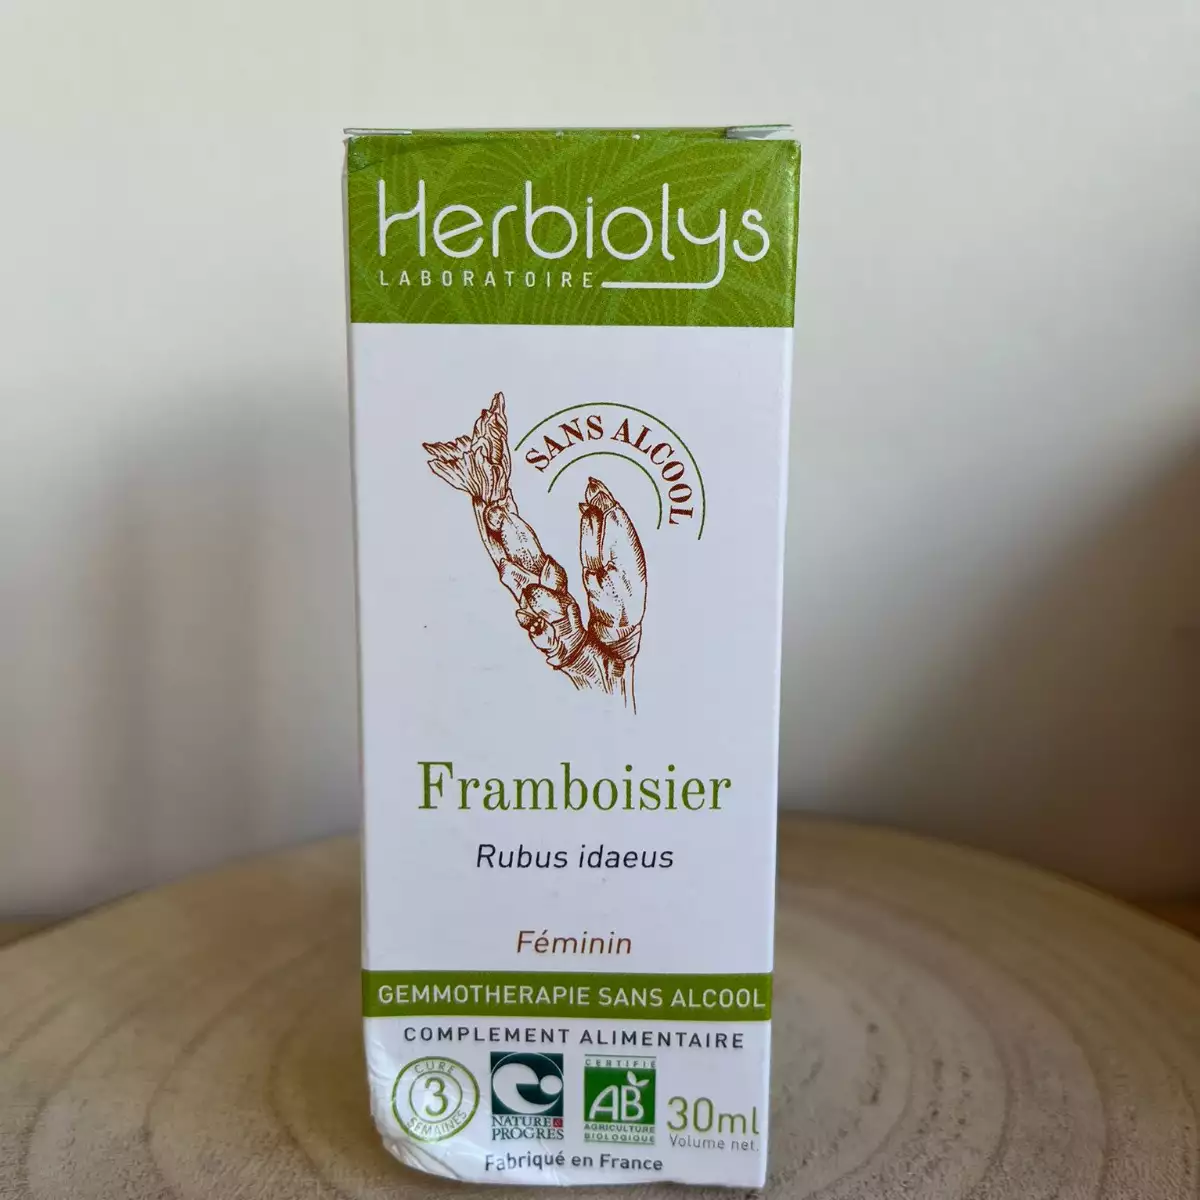 Framboisier - Herbiolys